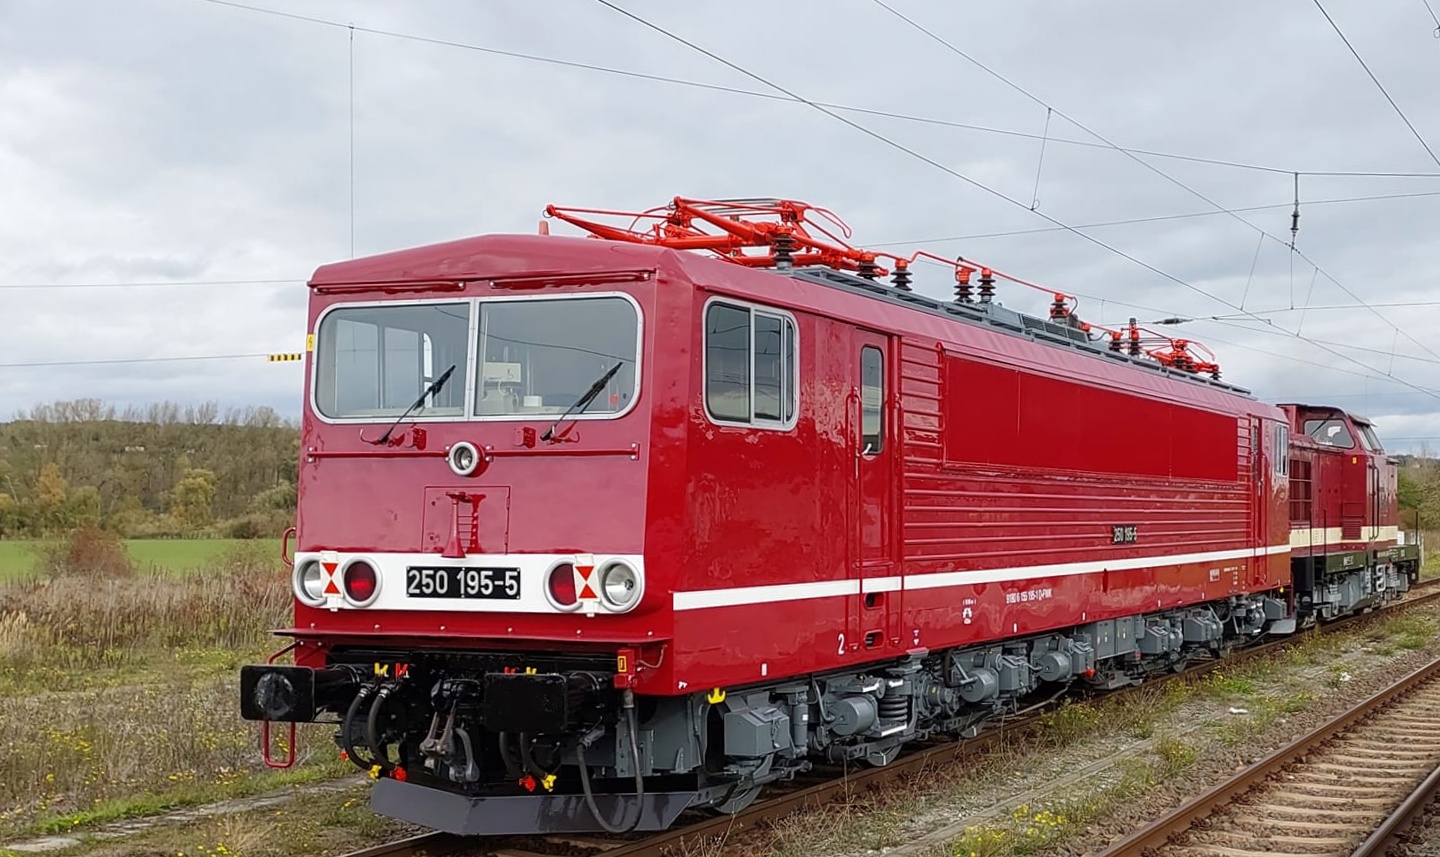 Die 250 195-5 Erfurter Bahnservice GmbH auf ihrer Premierenfahrt im neuen Lack, am 07.11.2022 in Naumburg (S) Hbf. Wir wünschen allzeit gute Fahrt! (Foto:Maik Köhler)